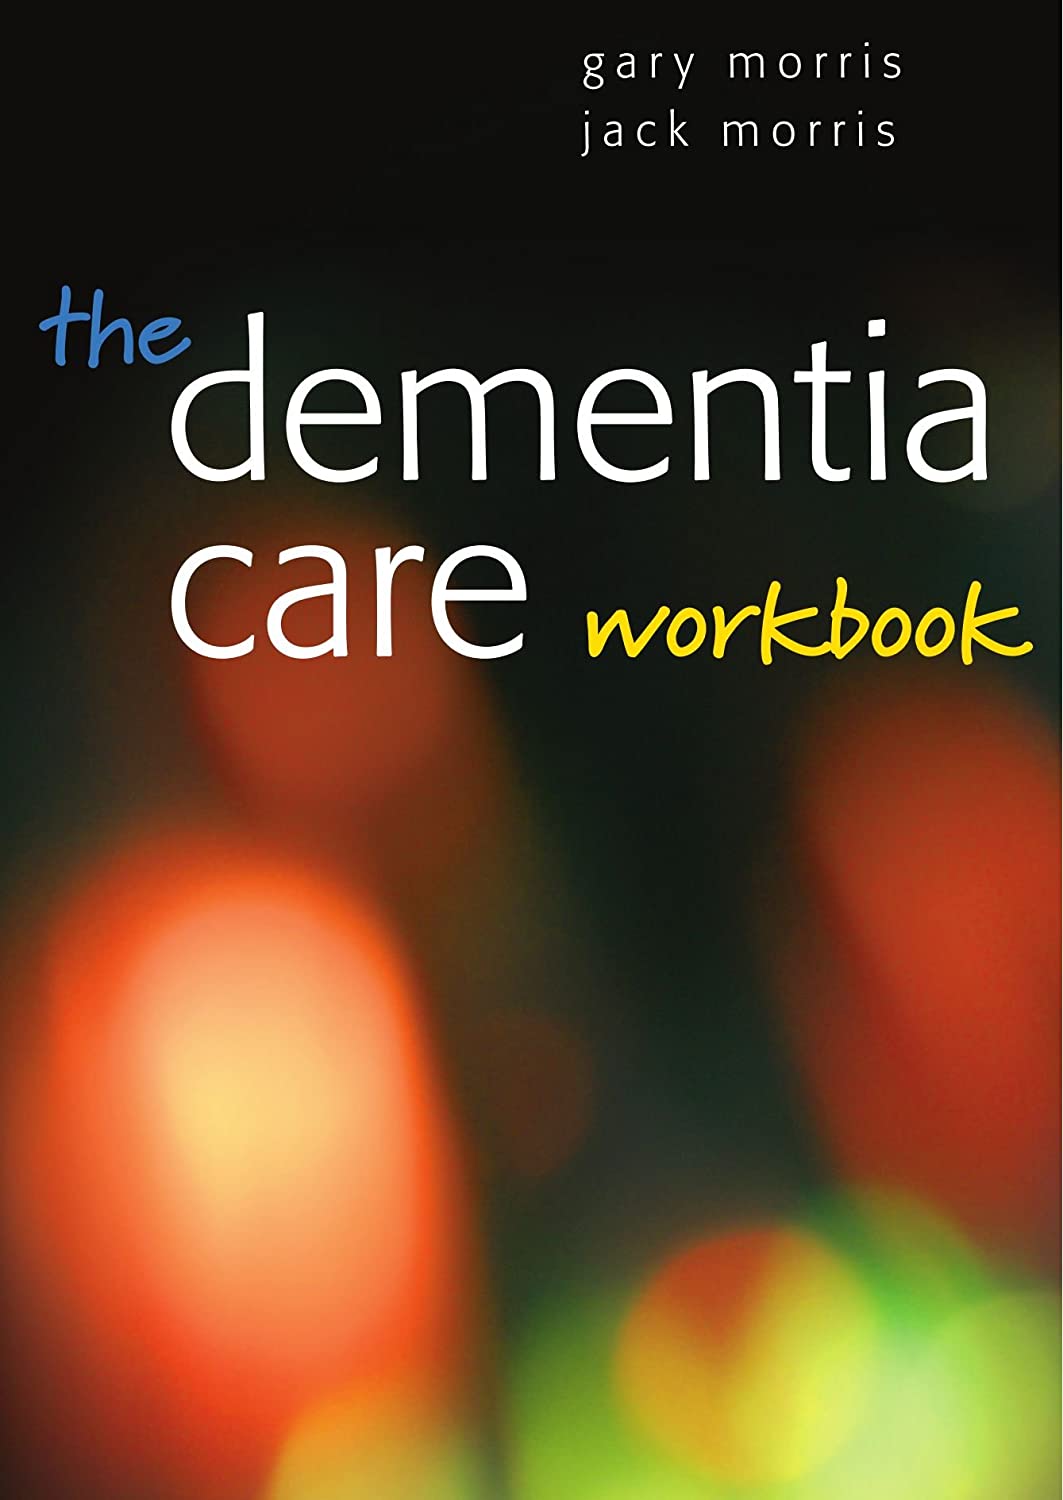 The dementia care workbook